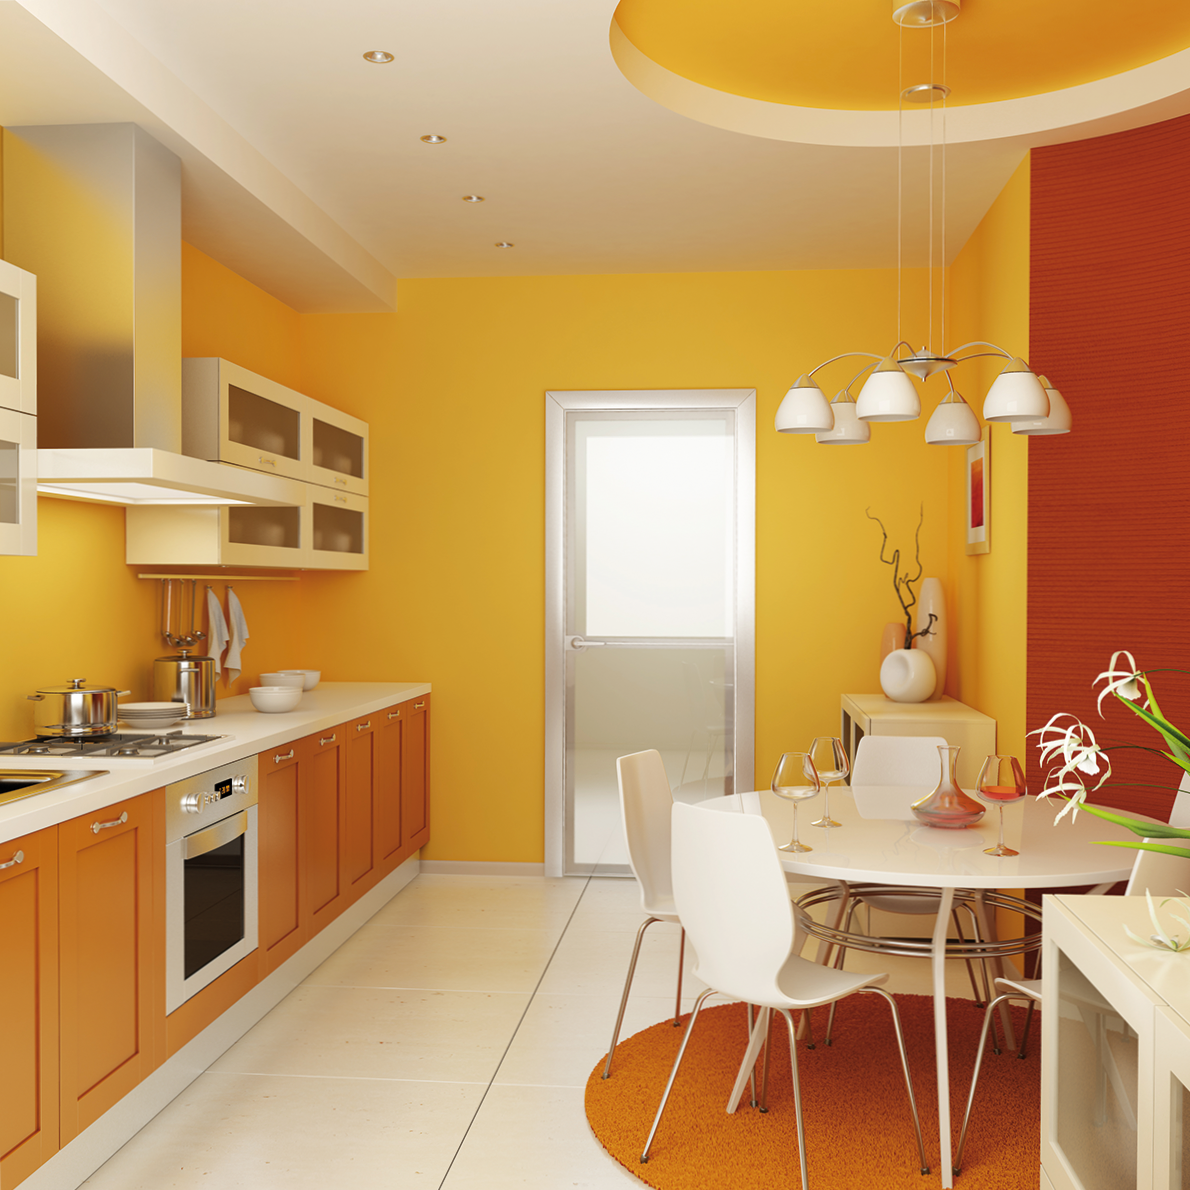 Кухня оранжевая какие обои подойдут – какие обои выбрать под оранжевый гарнитур. каким цветом выбрать обои для красной или оранжевой кухни - кухонный.ру